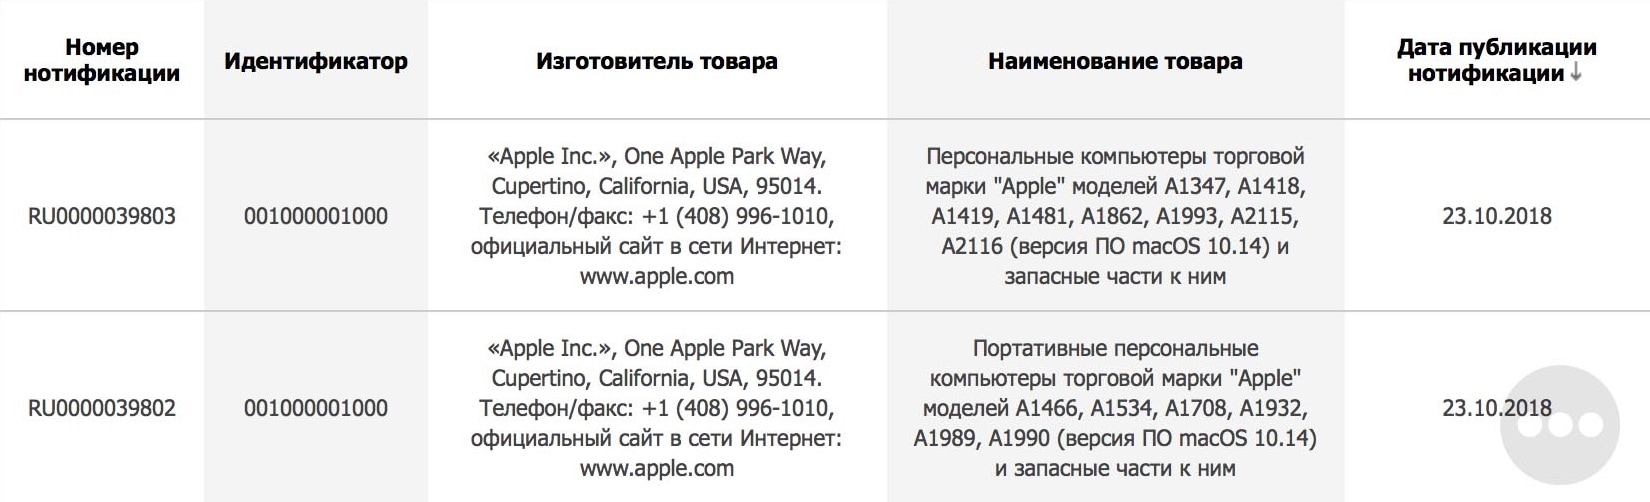 New Macs registered in Eurasia